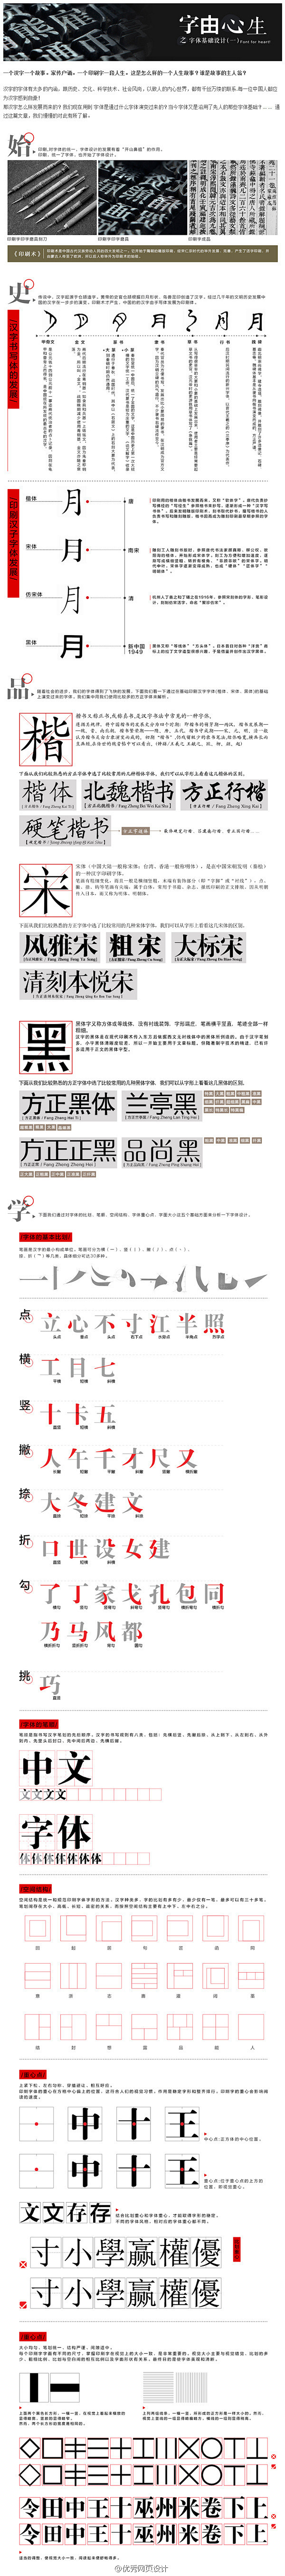 字体设计【长沙之所以广告灵感库 http...